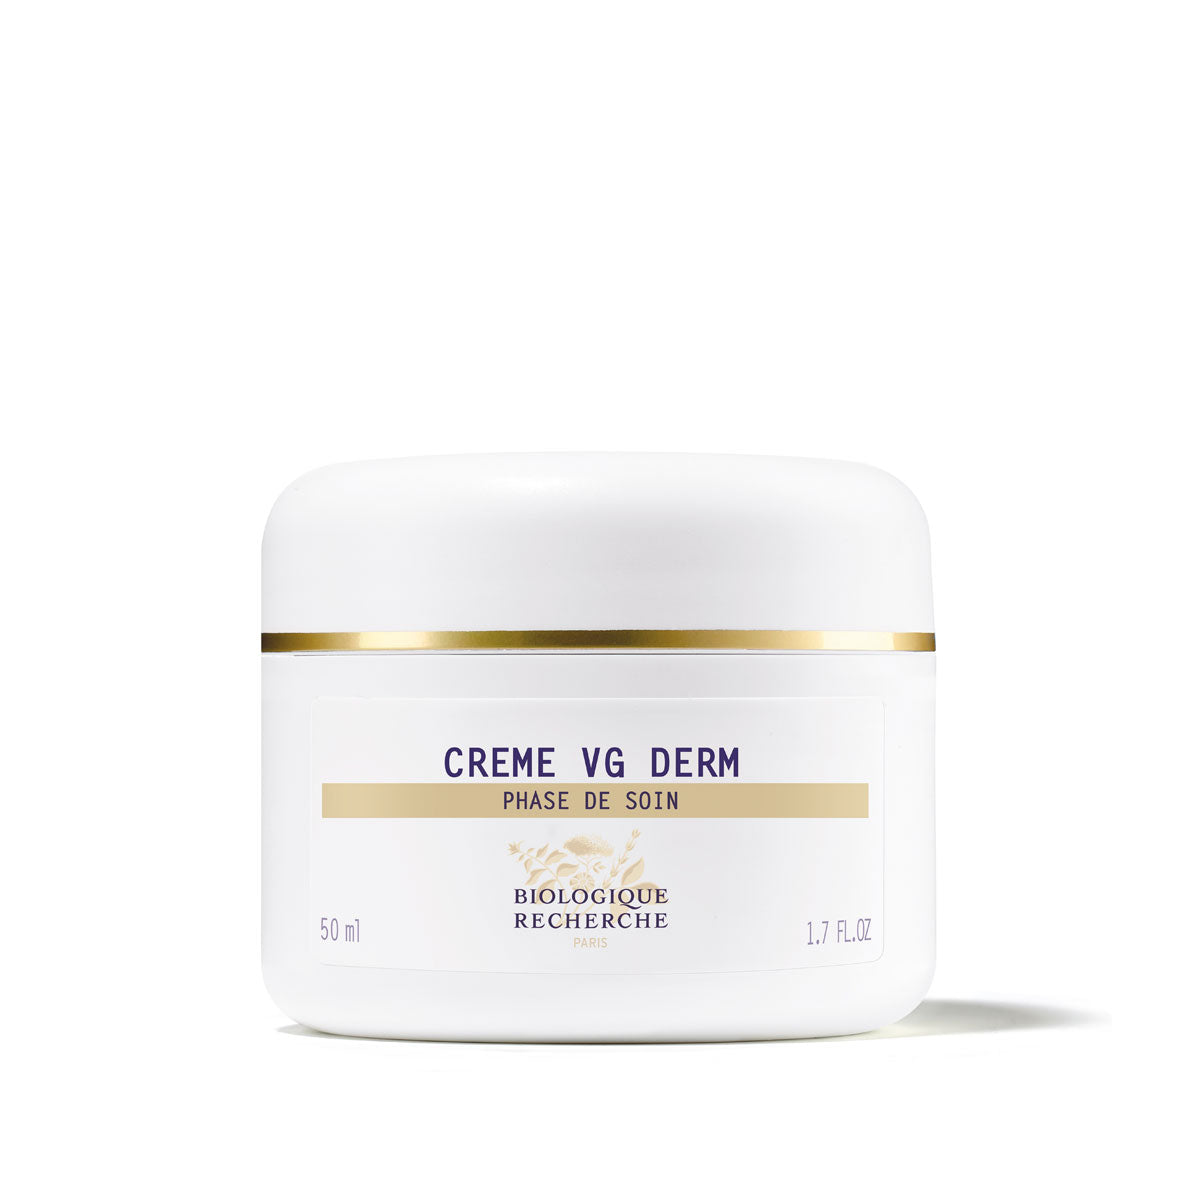 Creme VG Derm -- Nutritive Hydrating Face Cream ** 1.7fl oz/50ml